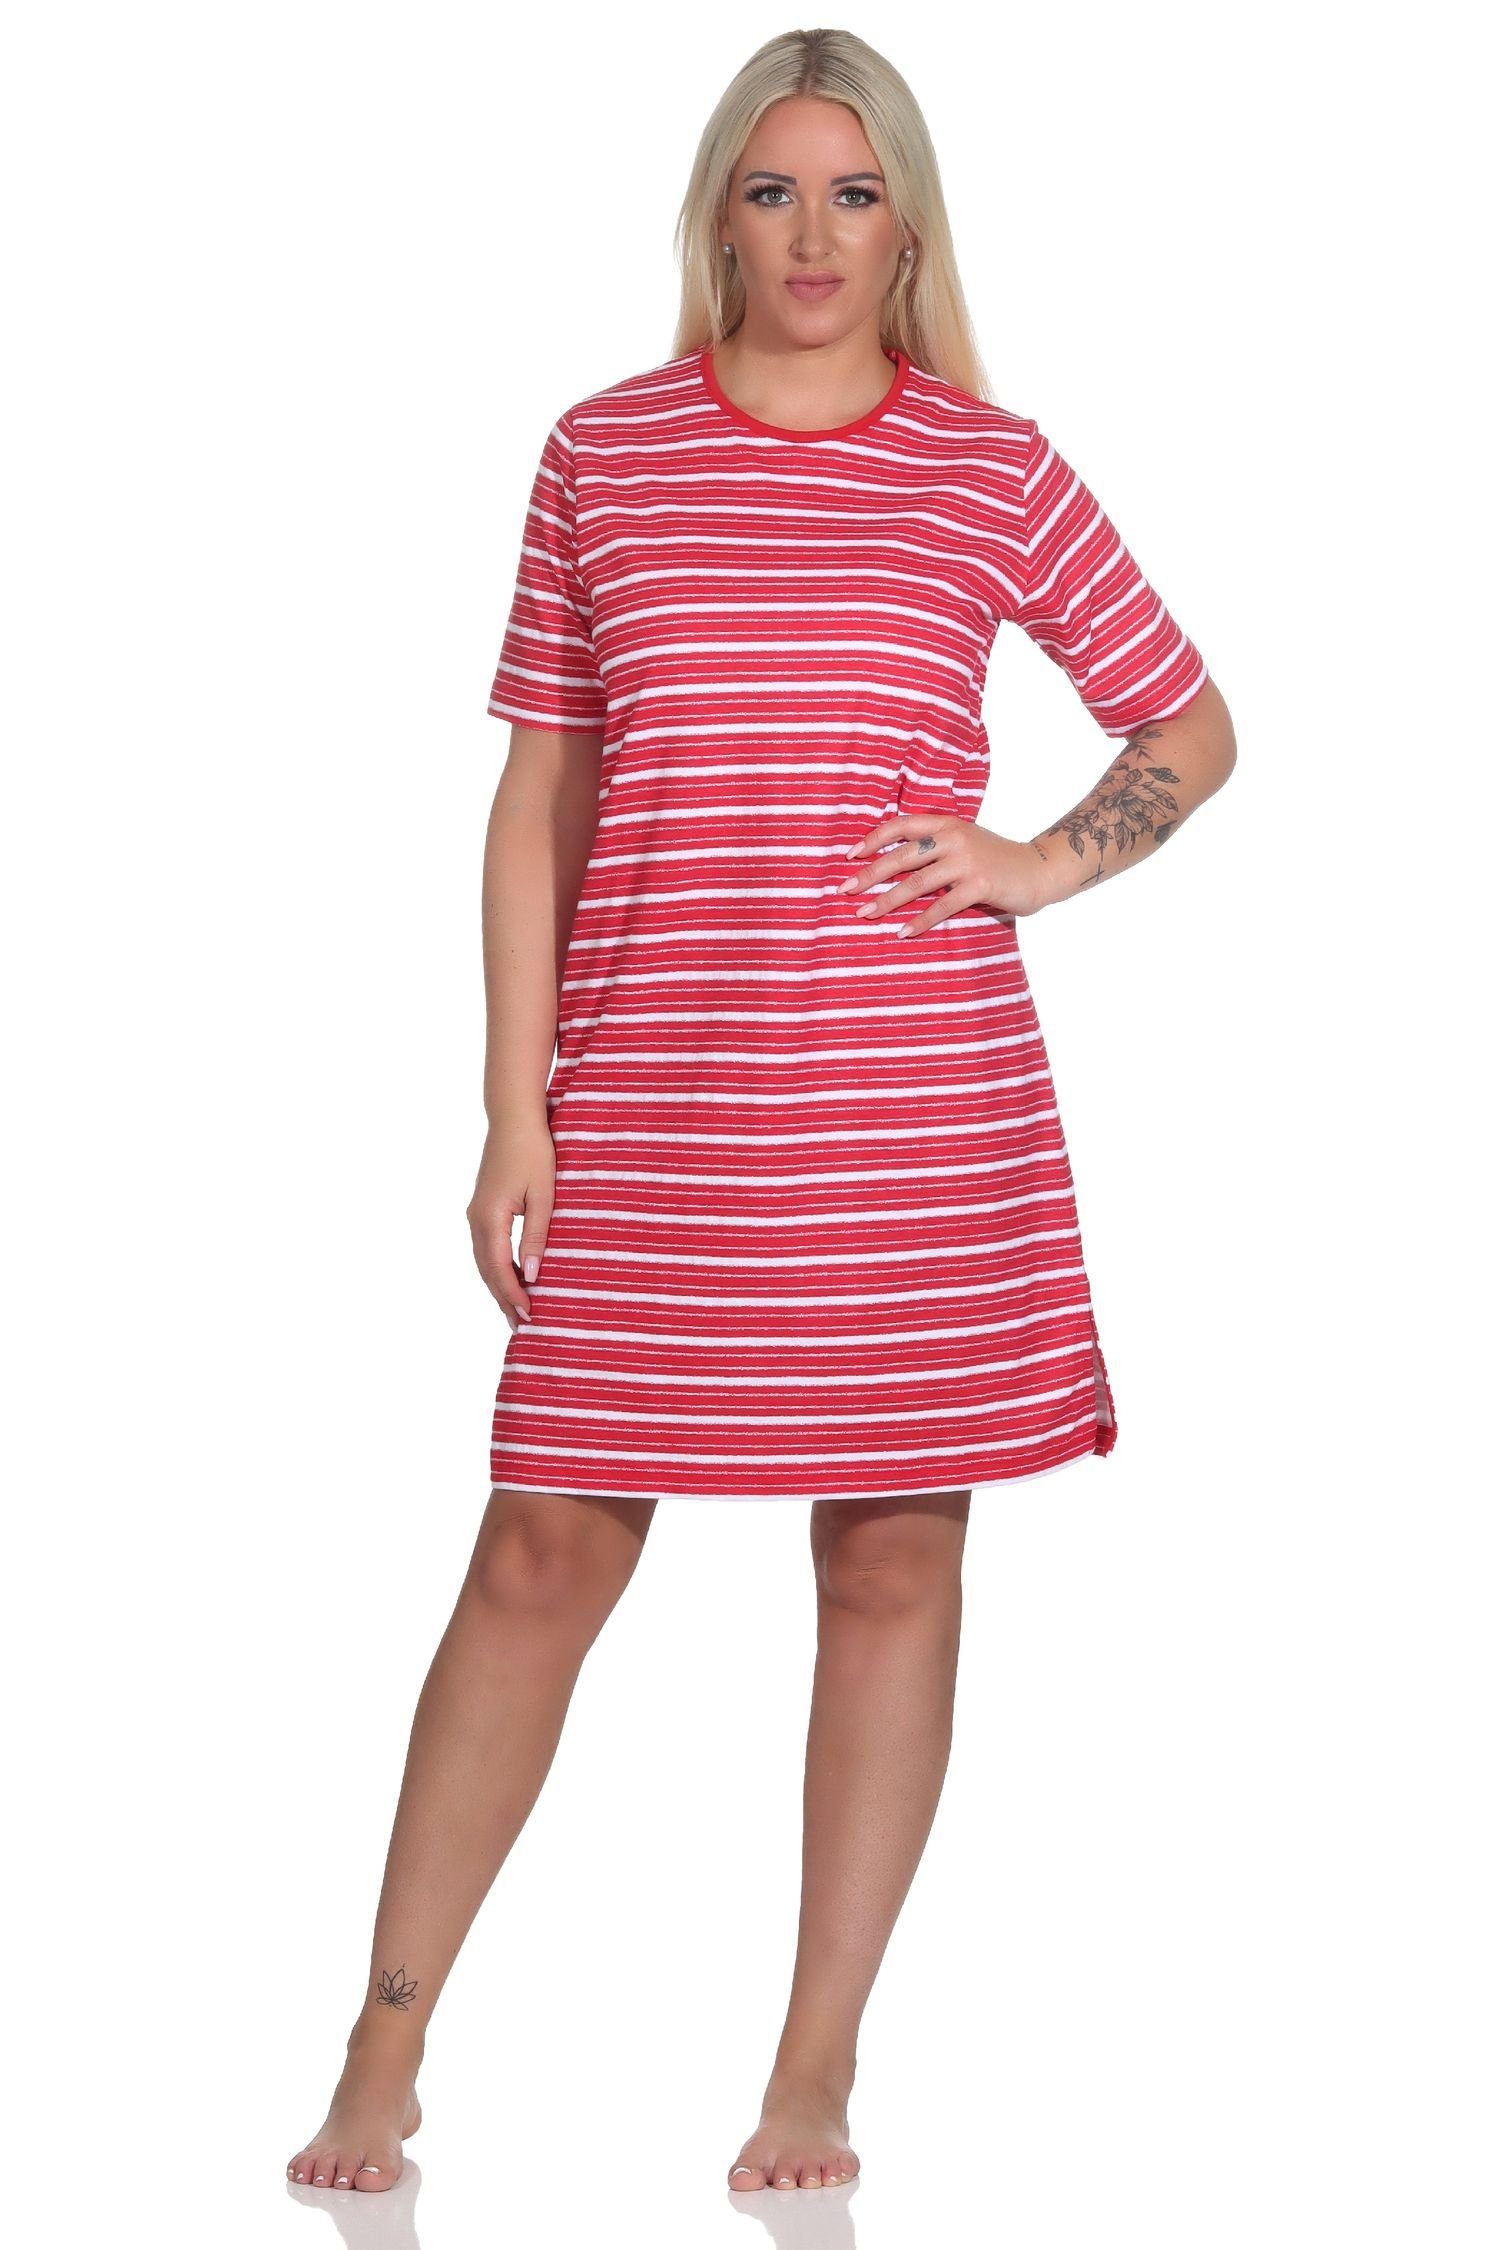 Normann Nachthemd Damen kurzarm Nachthemd in maritimer Optik - auch in Übergrößen rot